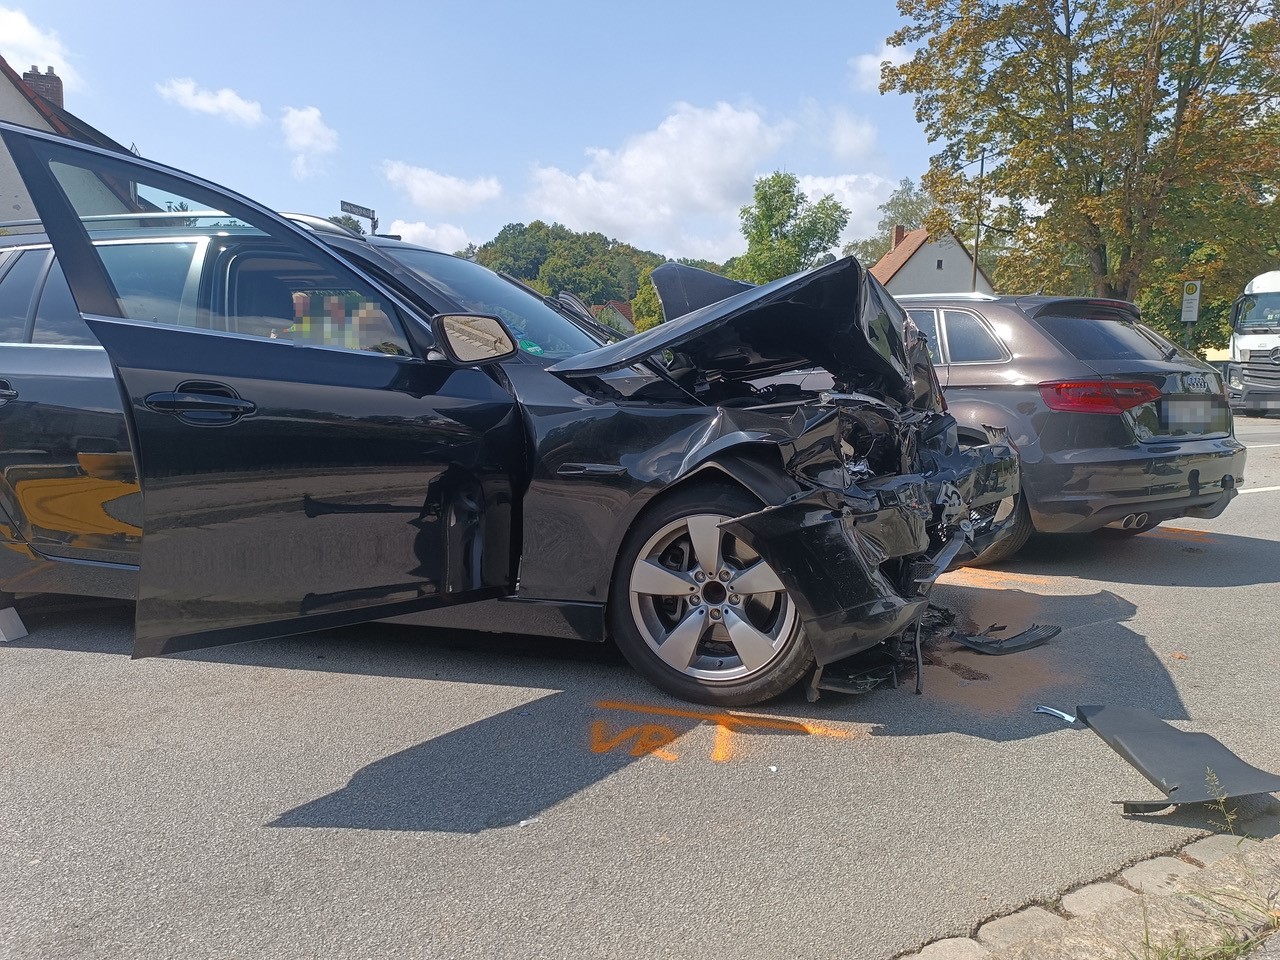 Schwerer Verkehrsunfall auf der Veldener Straße in Landshut